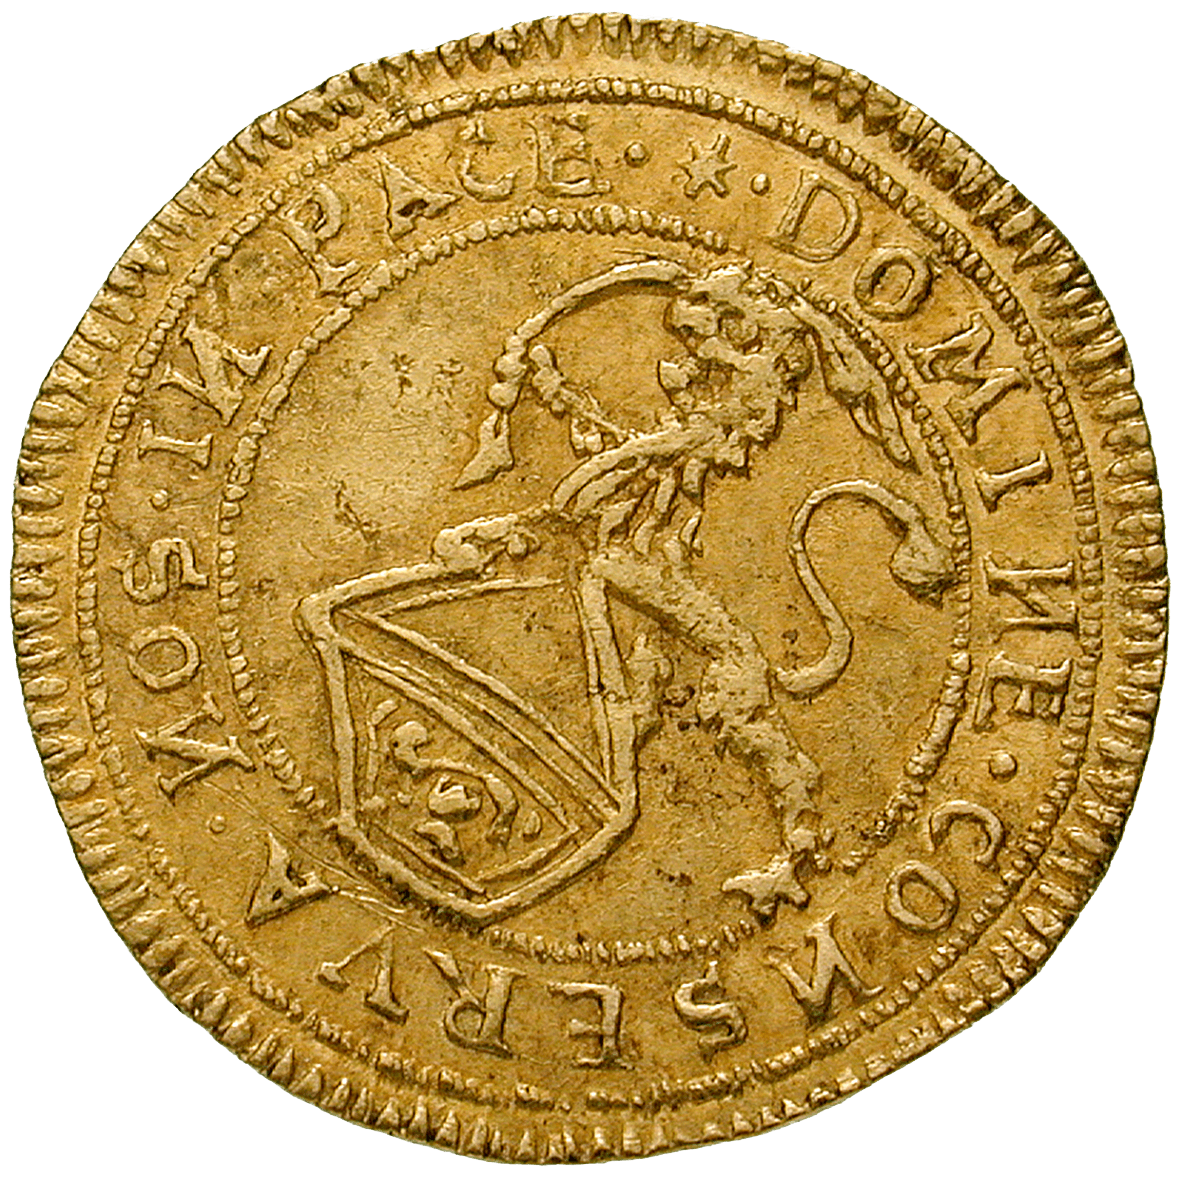 Republik Zürich, 1/2 Dukat 1649 (obverse)